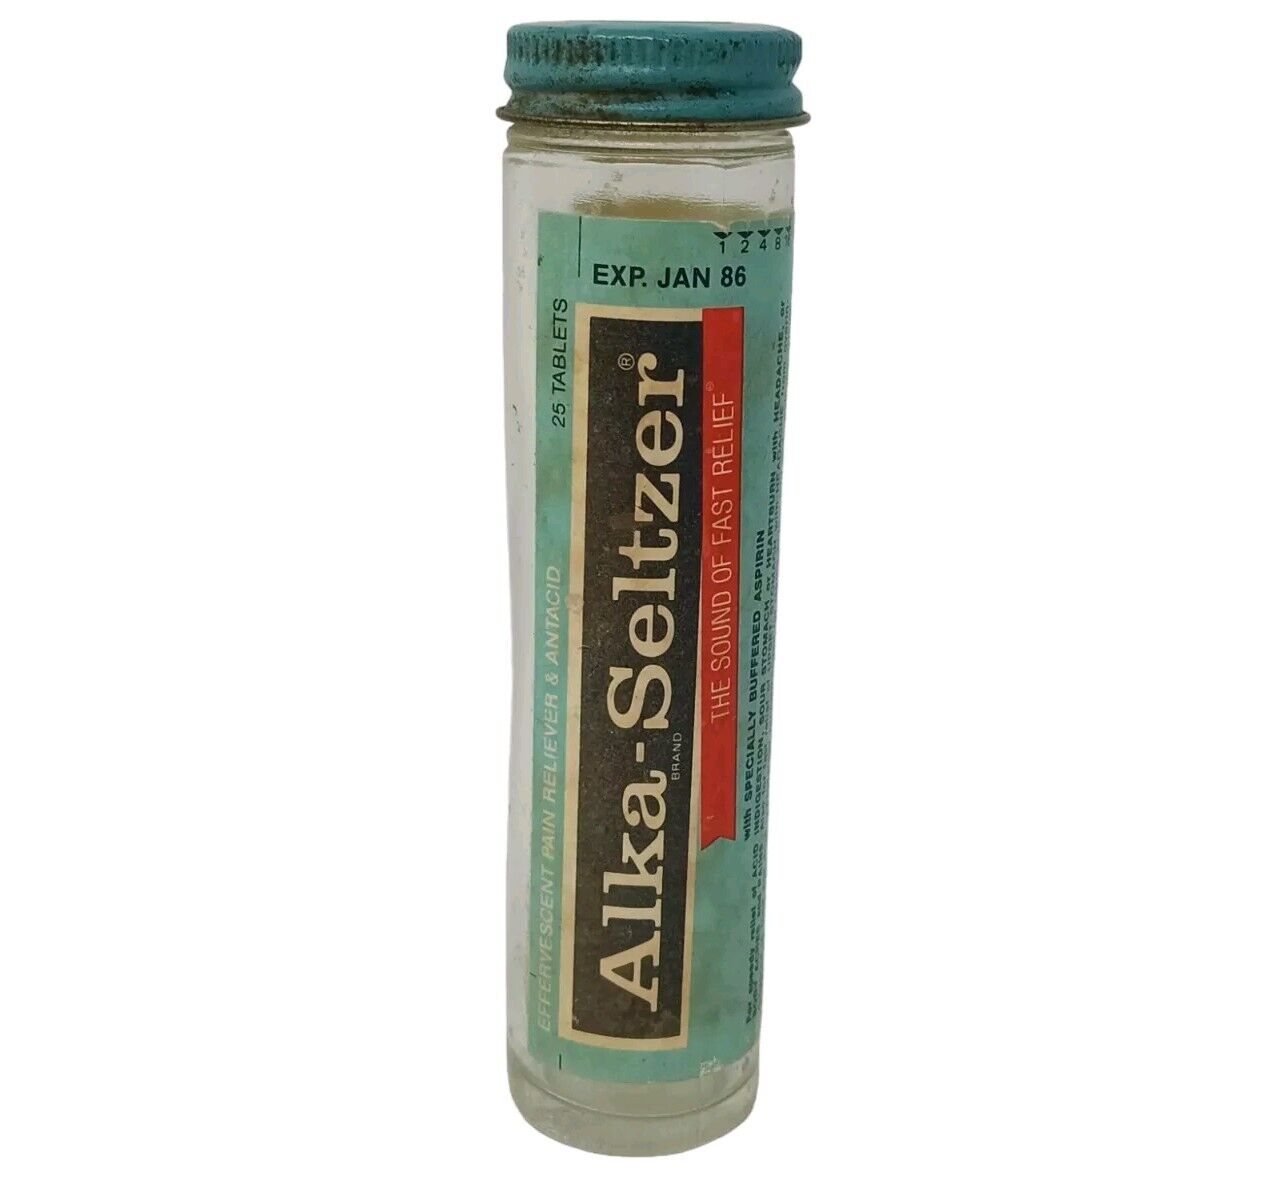 Vintage Alka-Seltzer Glass Tube Bottle 1980's